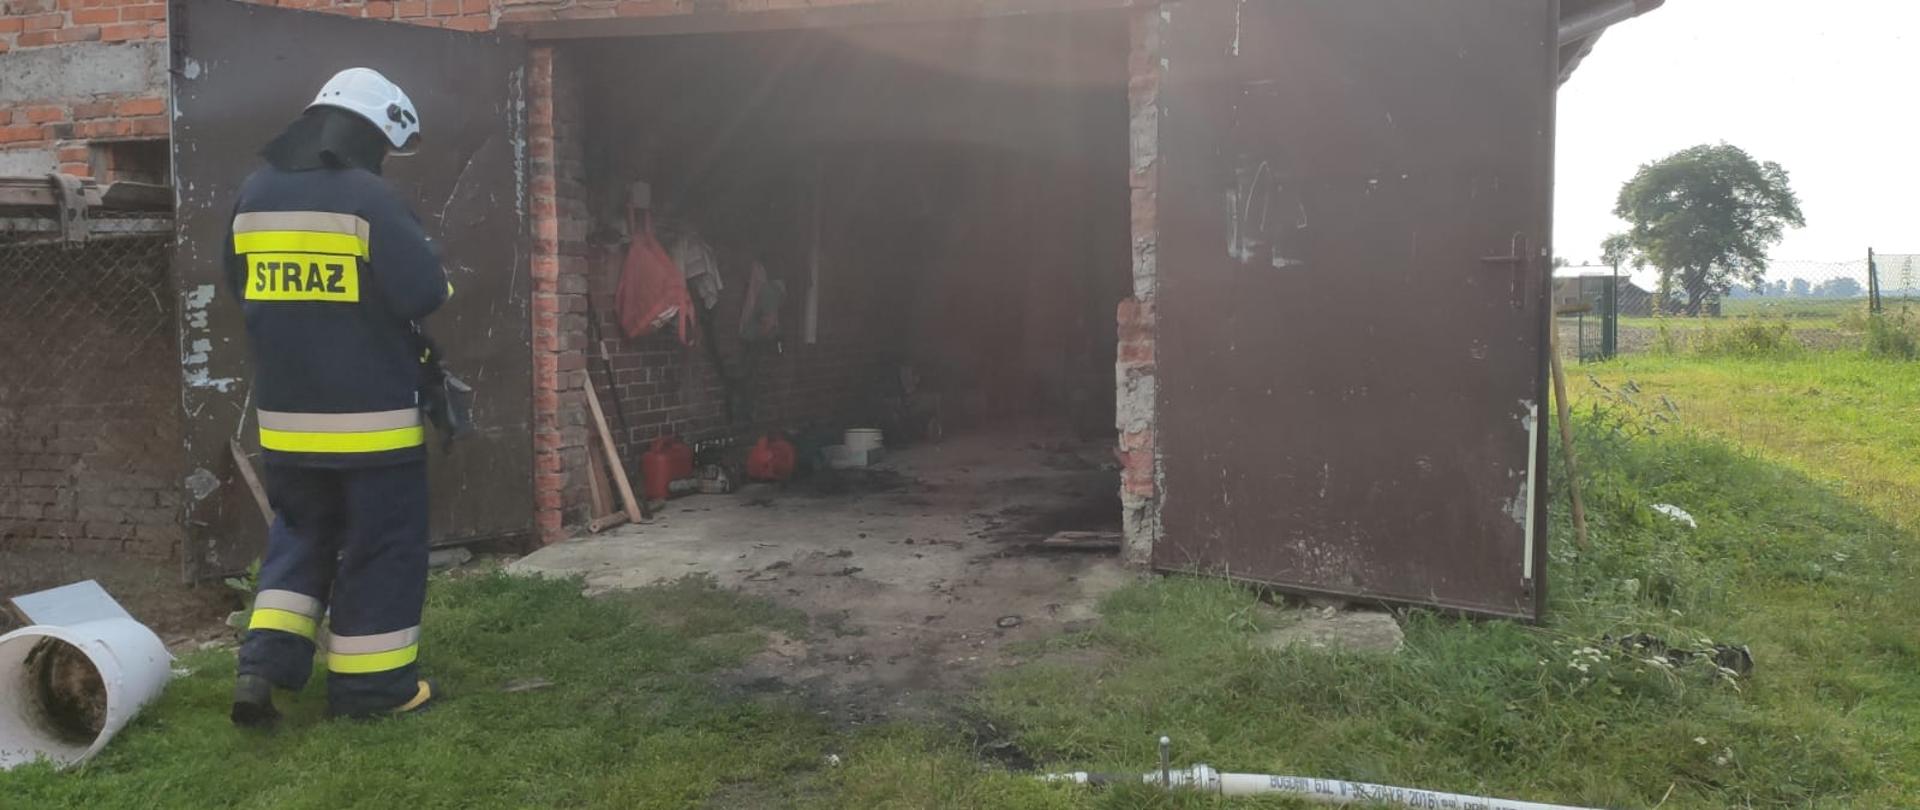 Strażak stojący przed garażem.